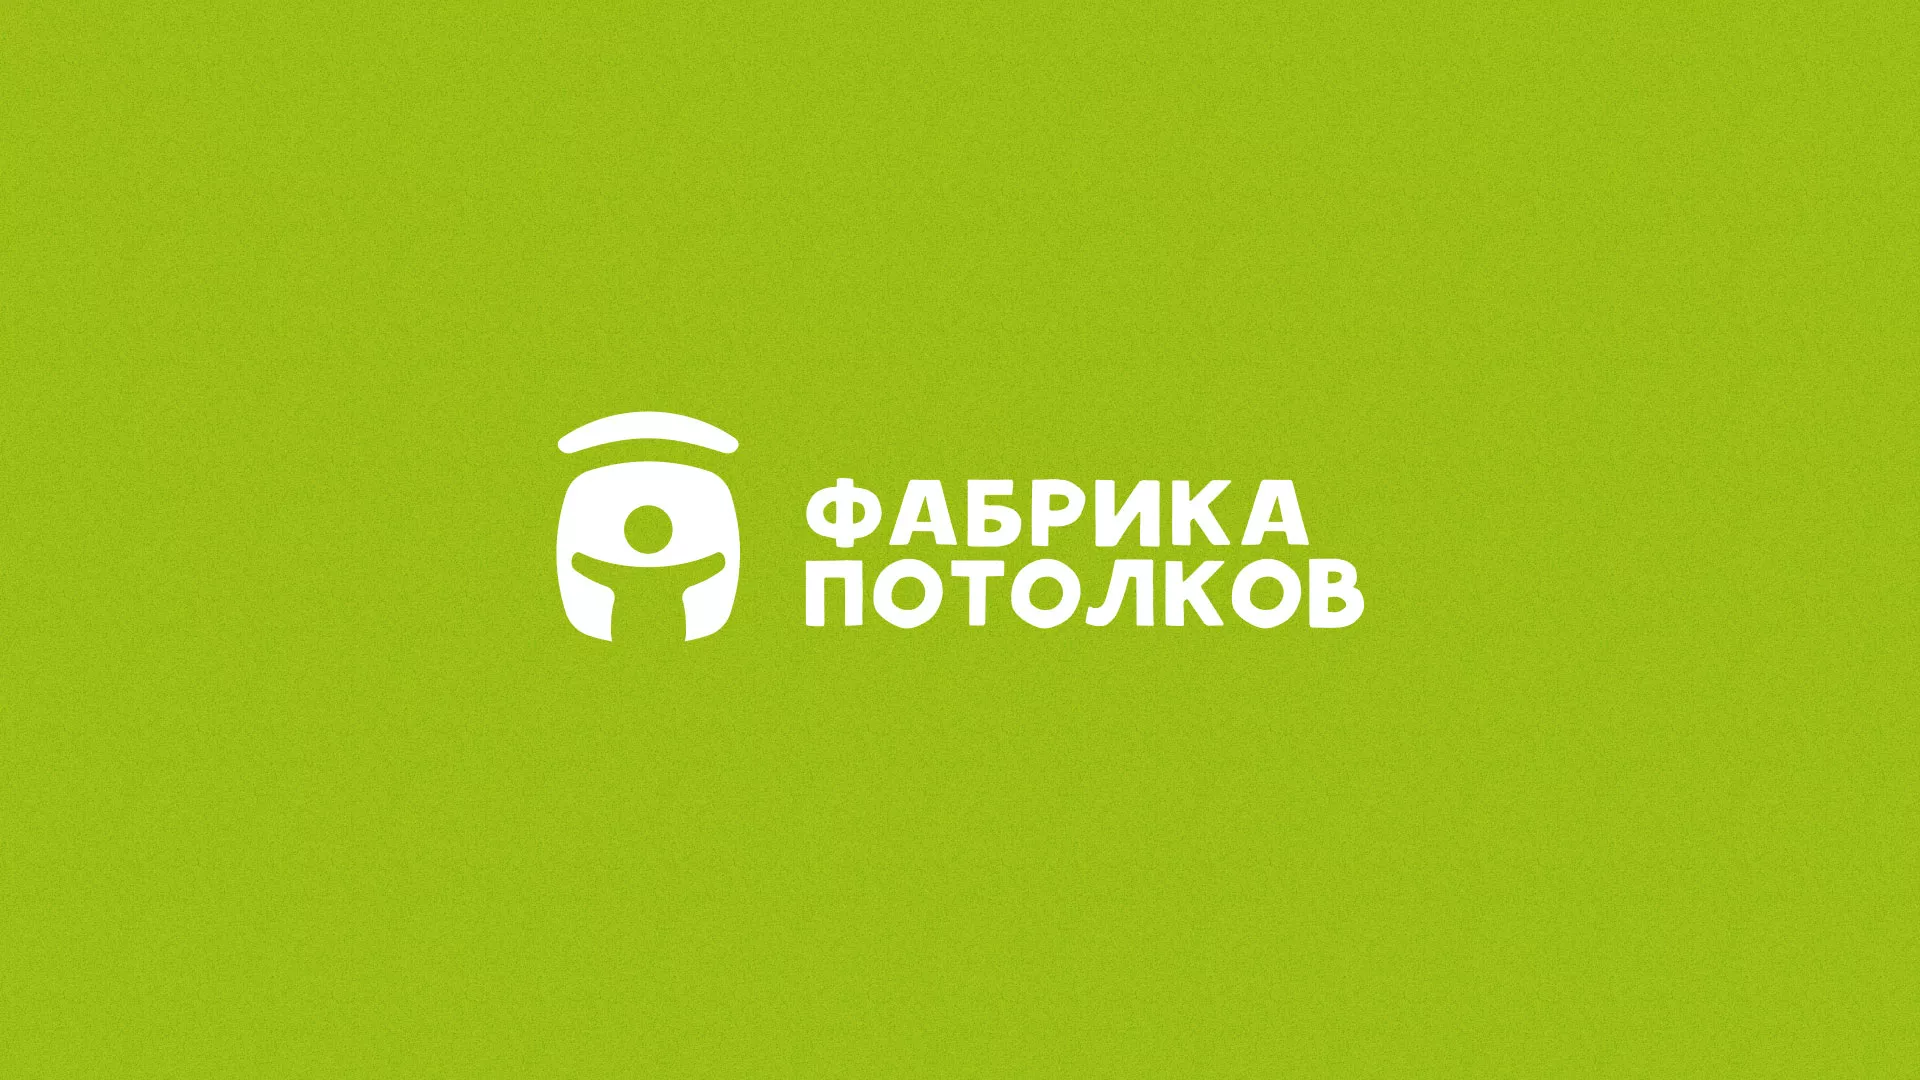 Разработка логотипа для производства натяжных потолков в Октябрьске